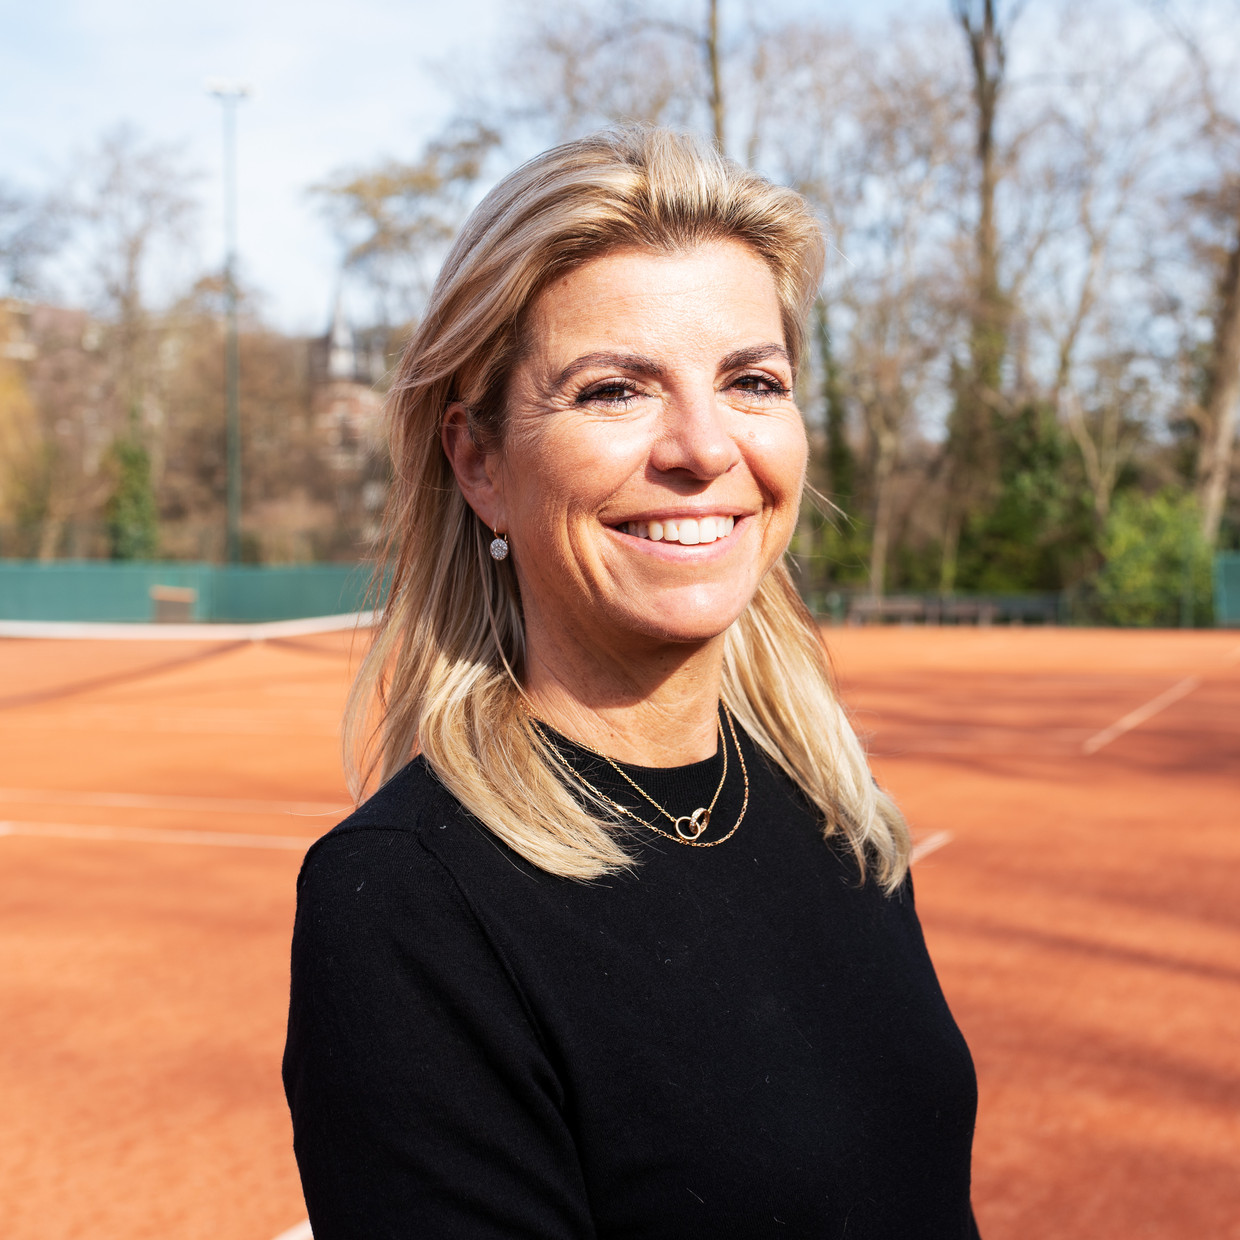 Directeur Hélène Hoogeboom van Renewaball bij de tennisbaan in het Amsterdamse Vondelpark. Beeld Sabine van Wechem